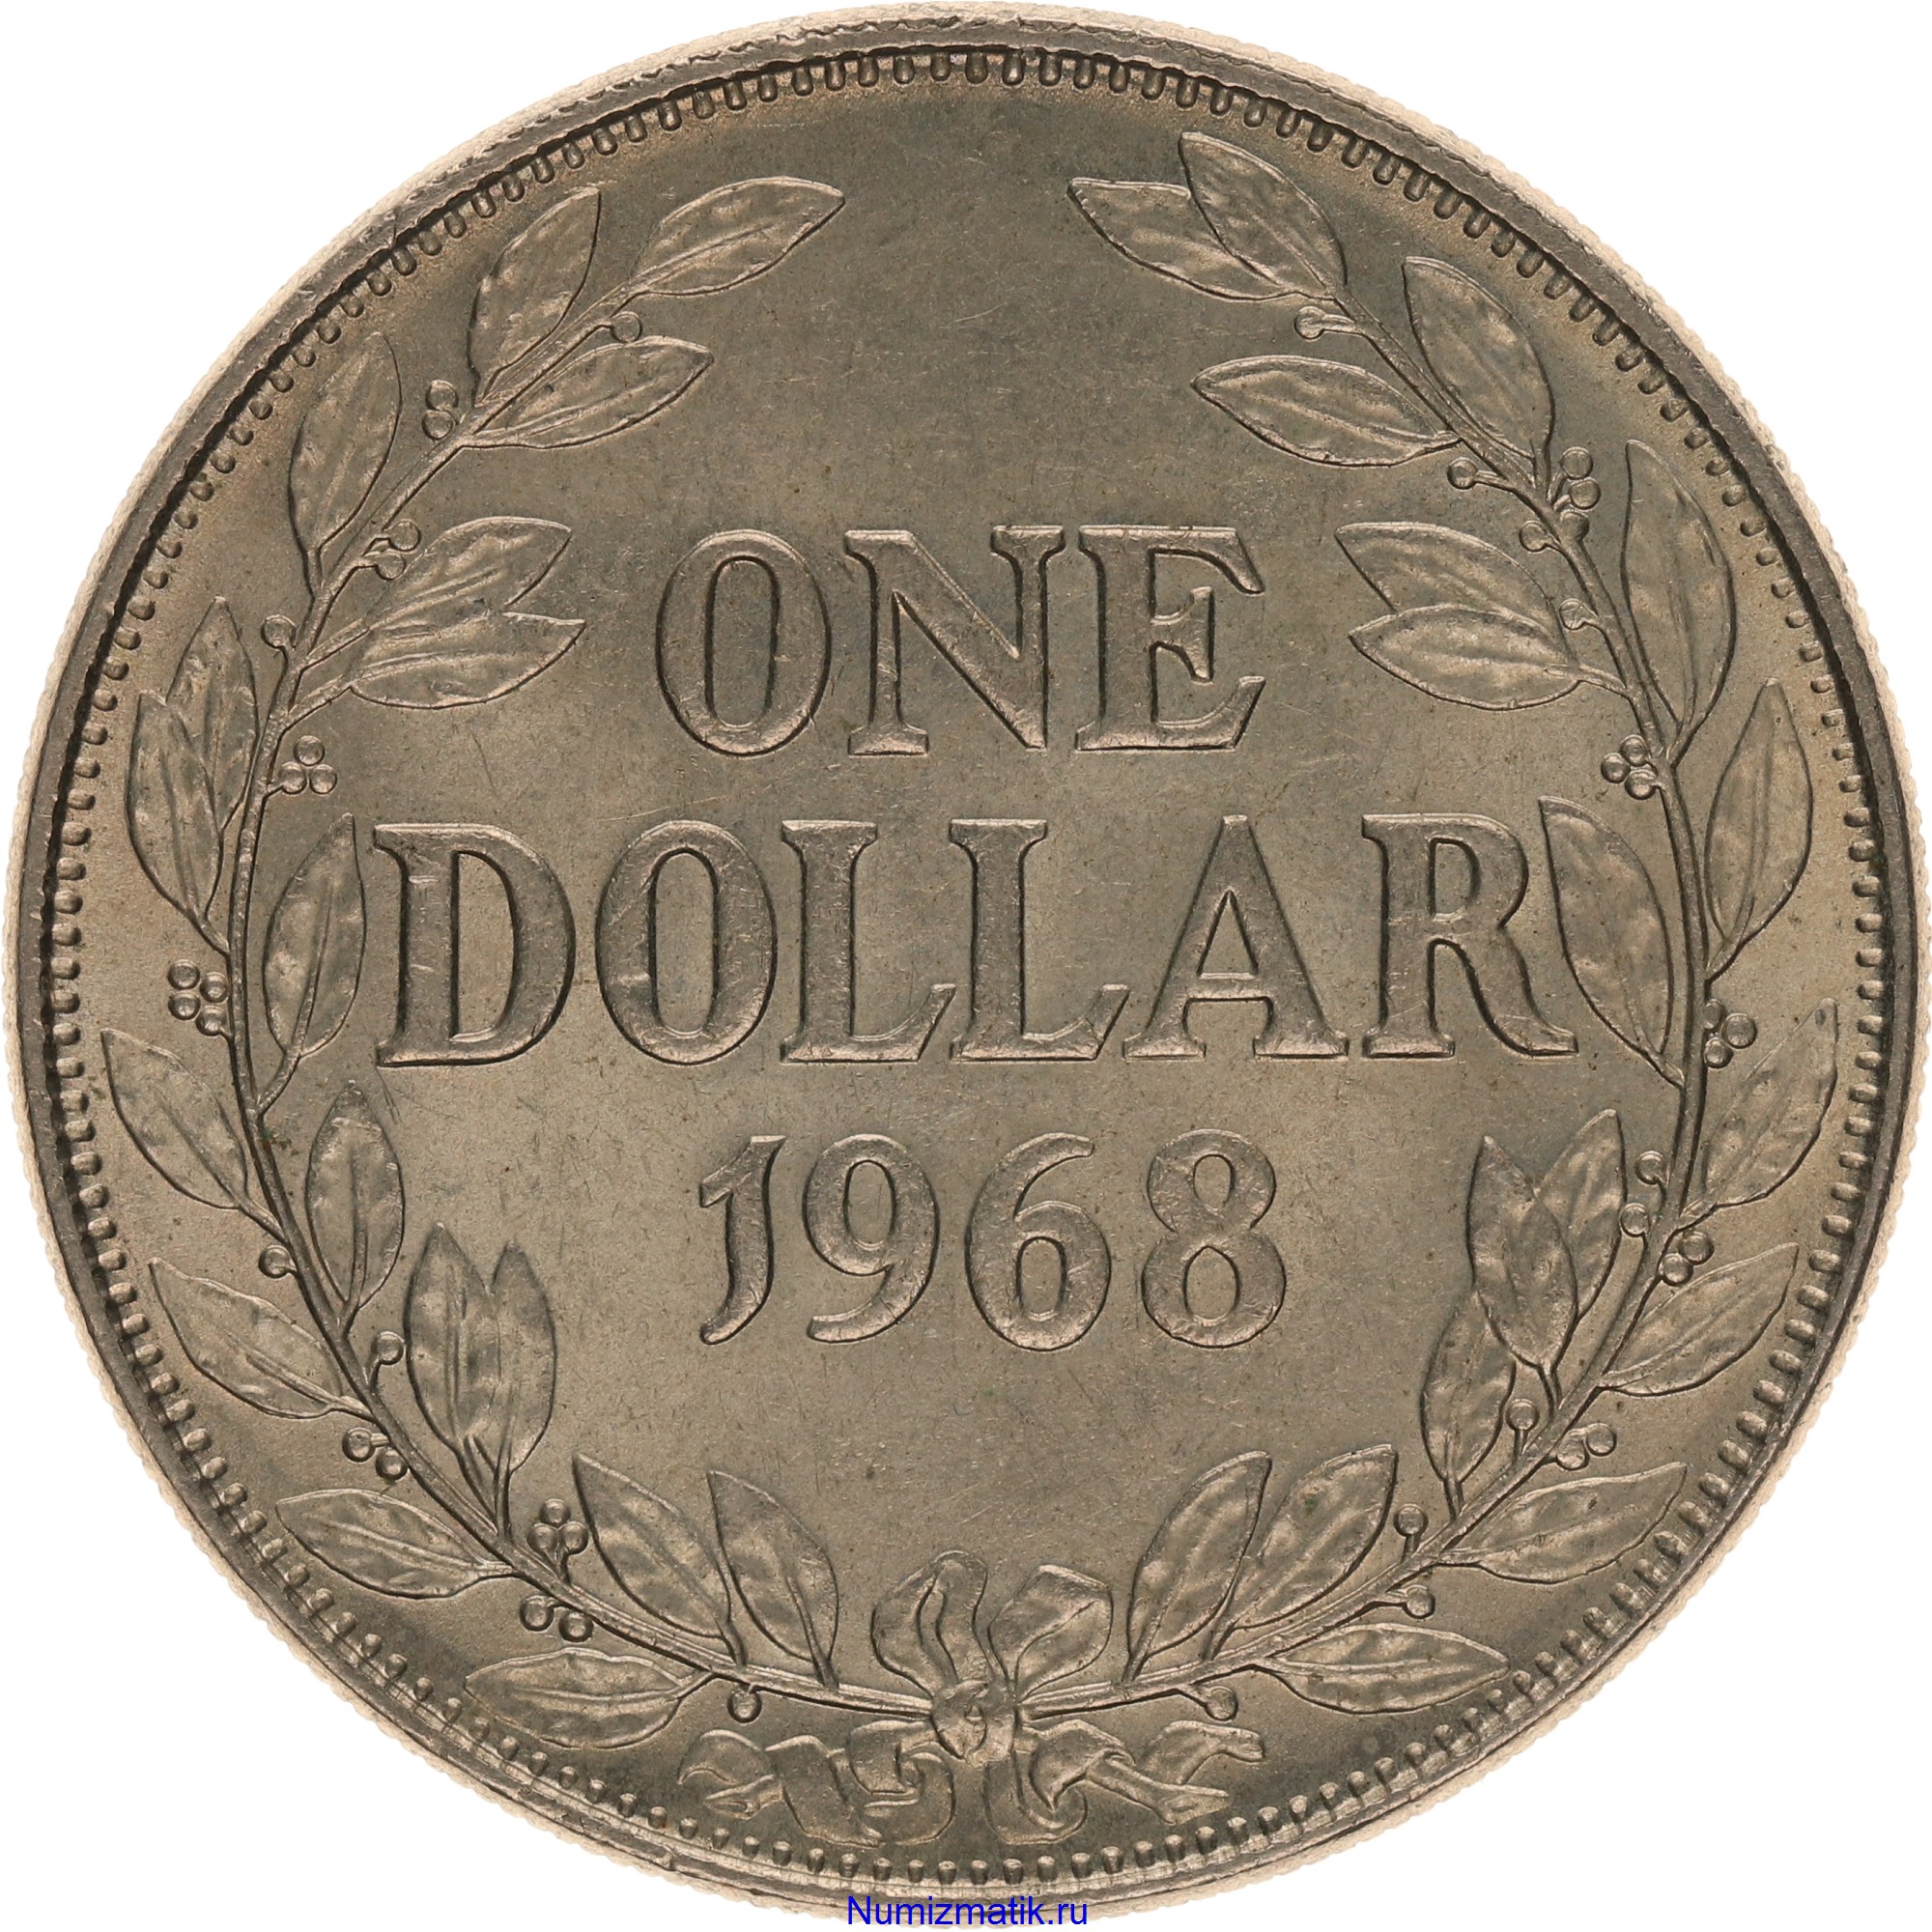 Доллар 1970 года. 1 Доллар 1970 Либерия. Доллары 1970. Африканский доллар 24 года.